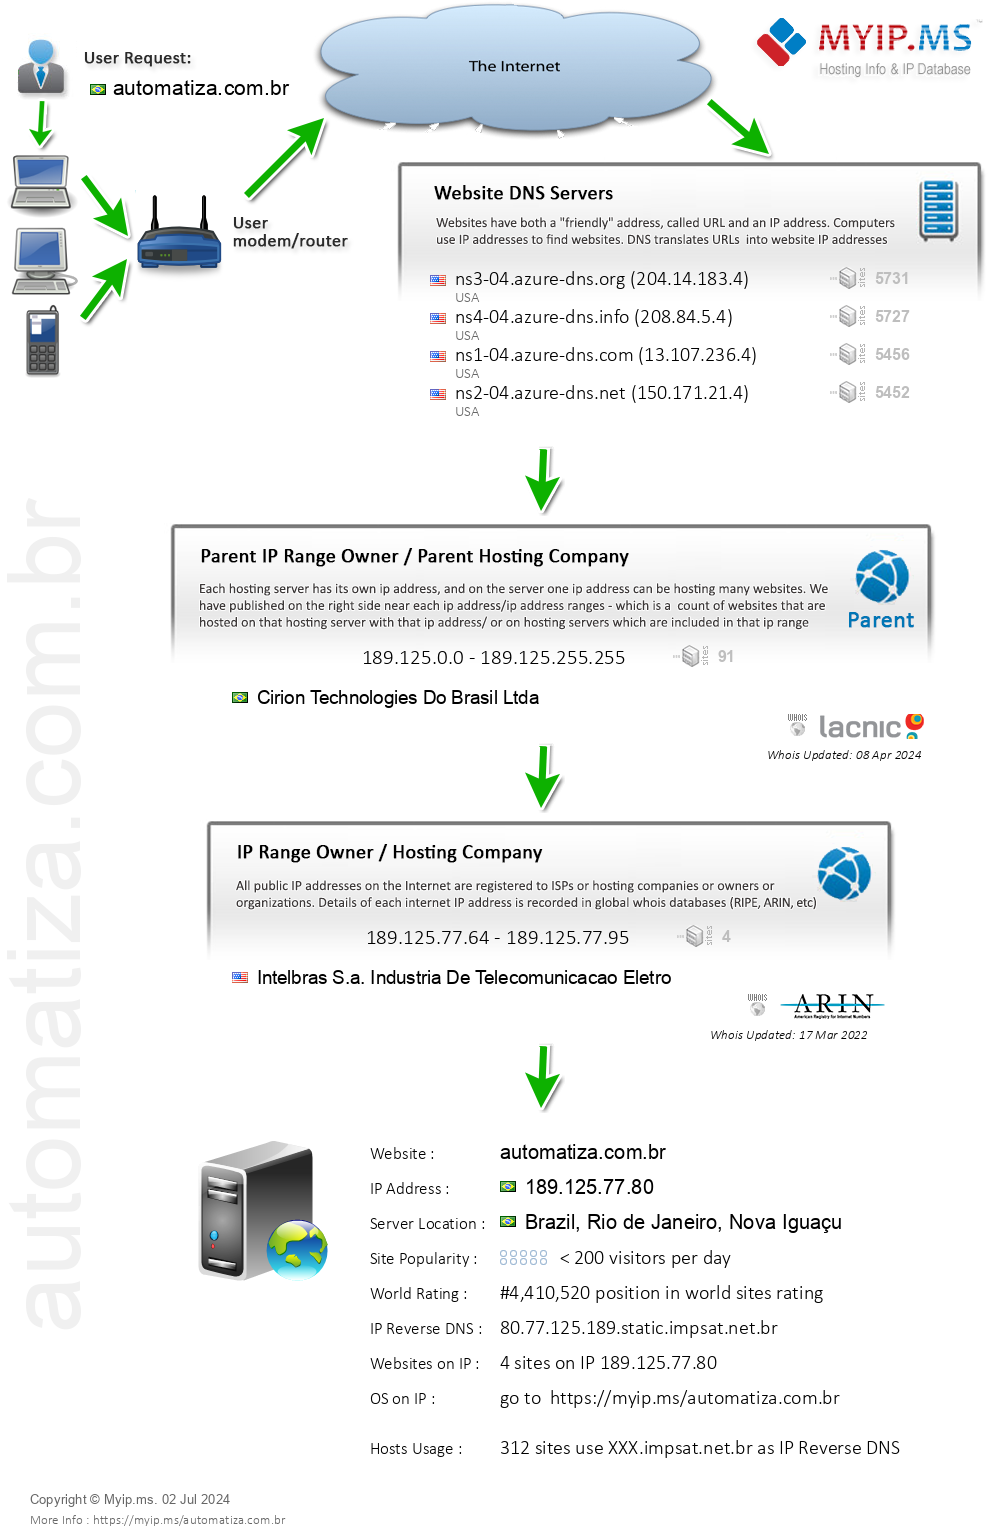 Automatiza.com.br - Website Hosting Visual IP Diagram